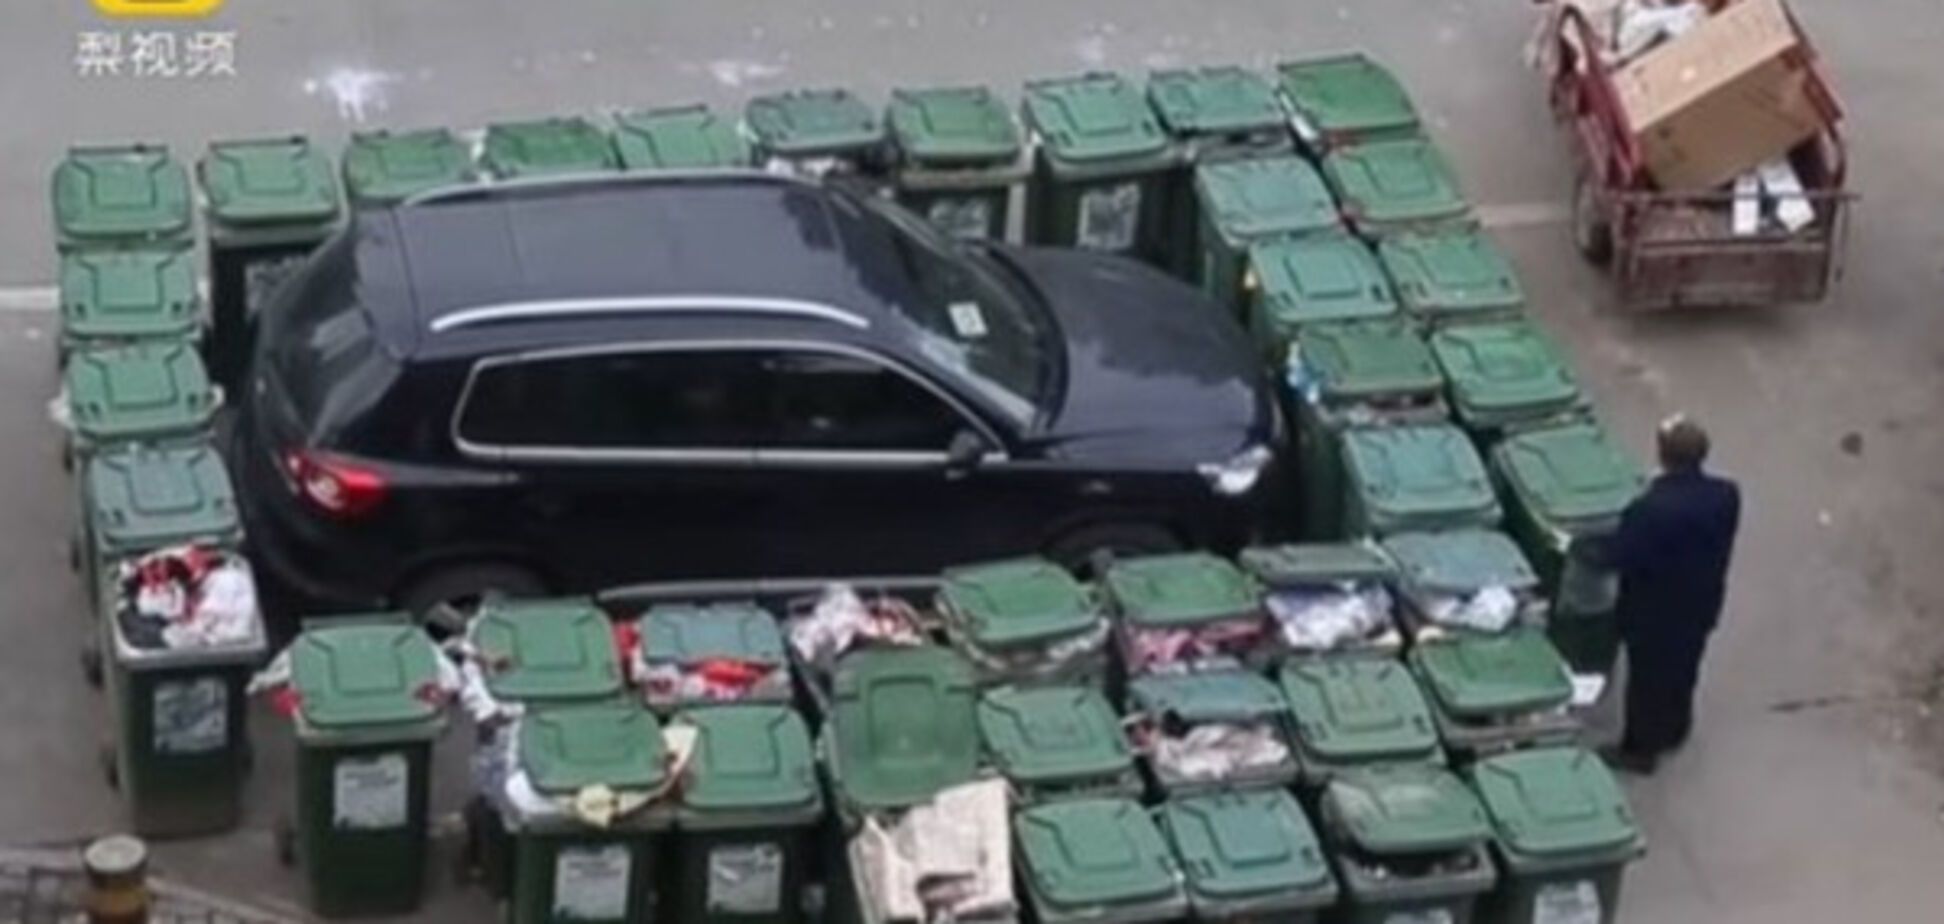 Жестокая месть герою парковки: авто заблокировали мусорниками